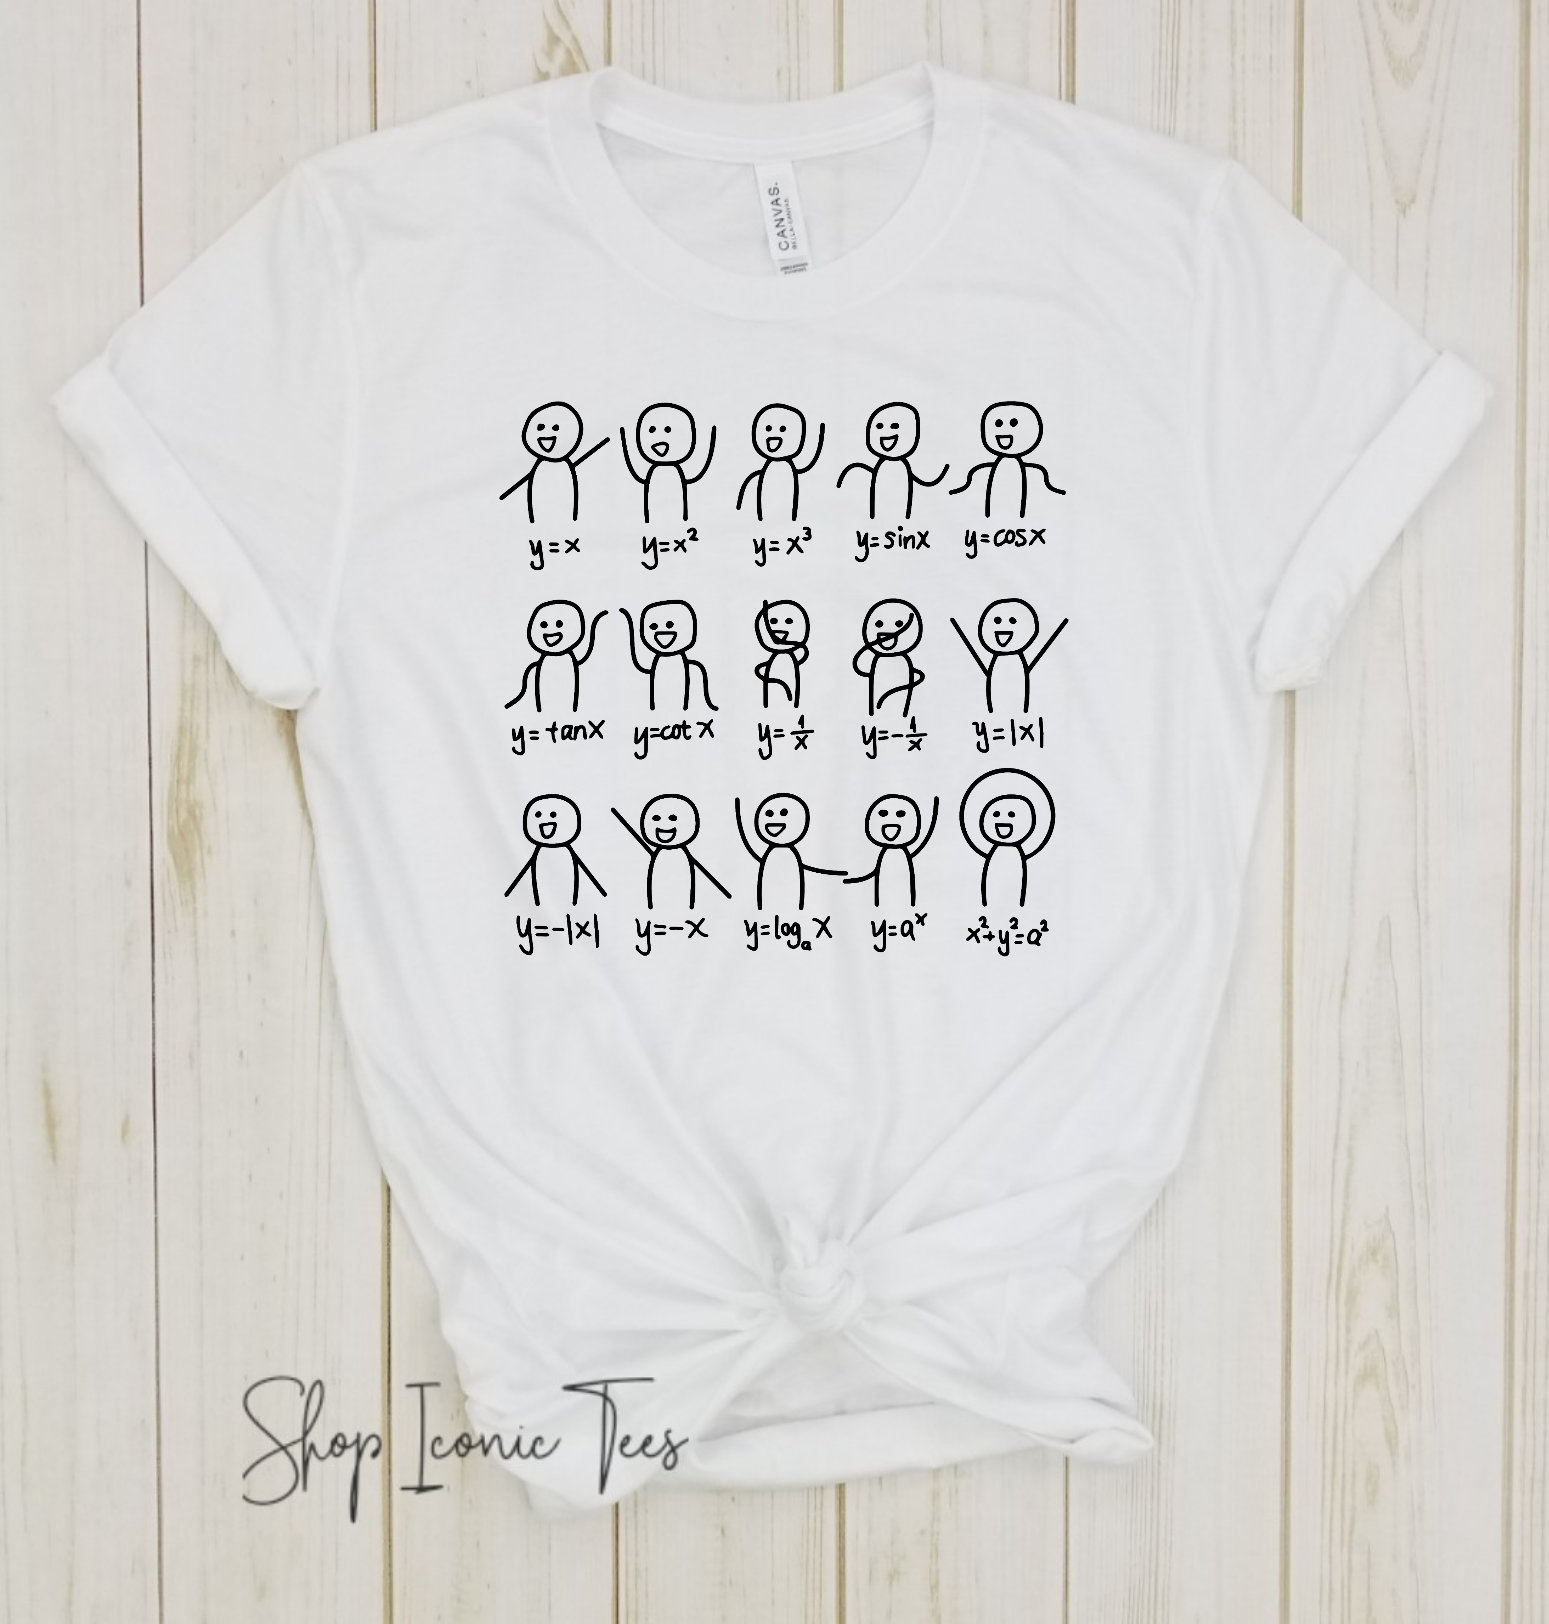 22. Stick Figures Design Math-Themed Shirt